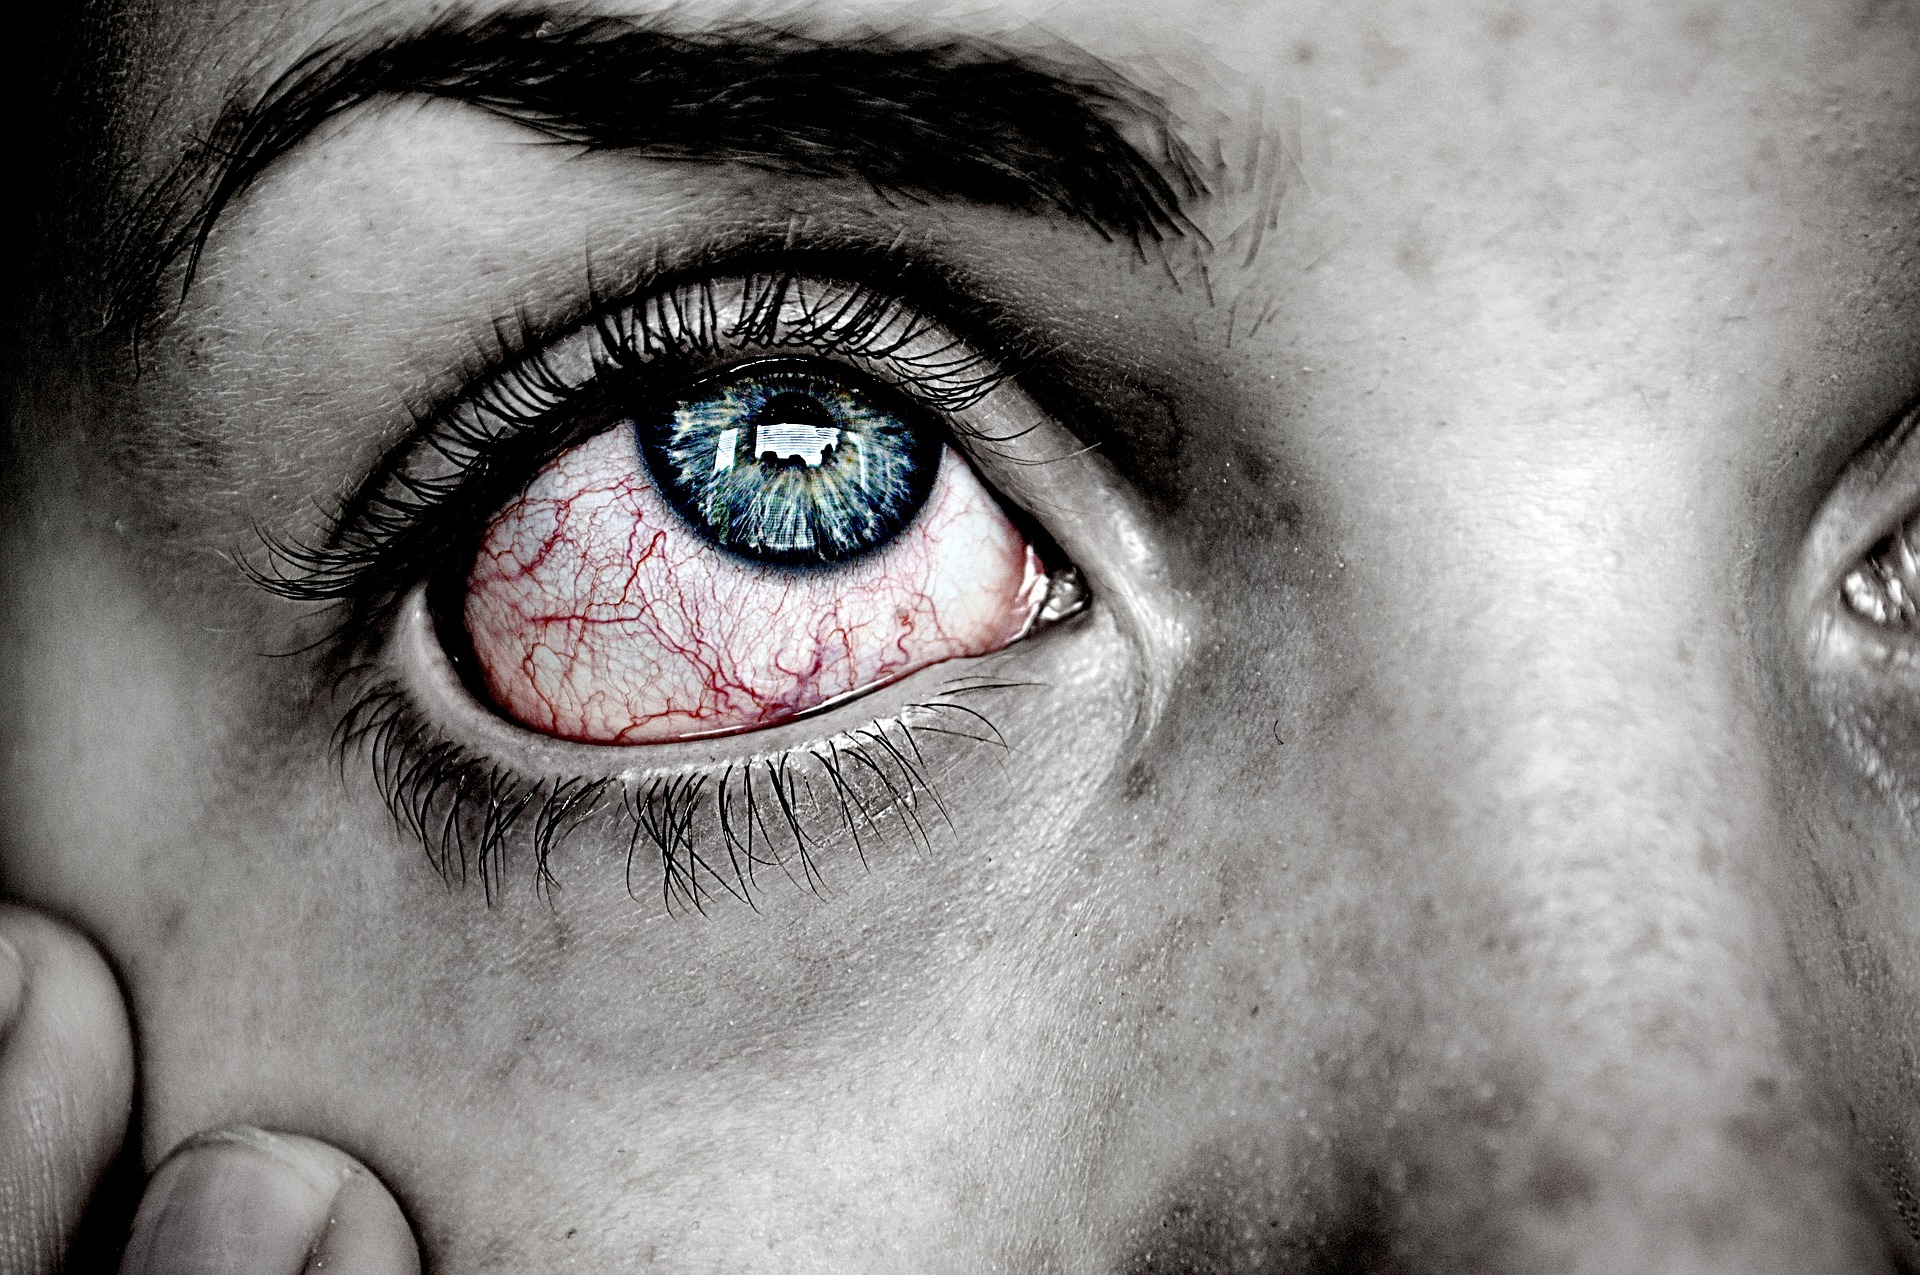 안피로증후군으로 인해 눈이 많이 충혈되고 아프고&#44; 피곤함 때문에 눈을 만지고 있는 사진